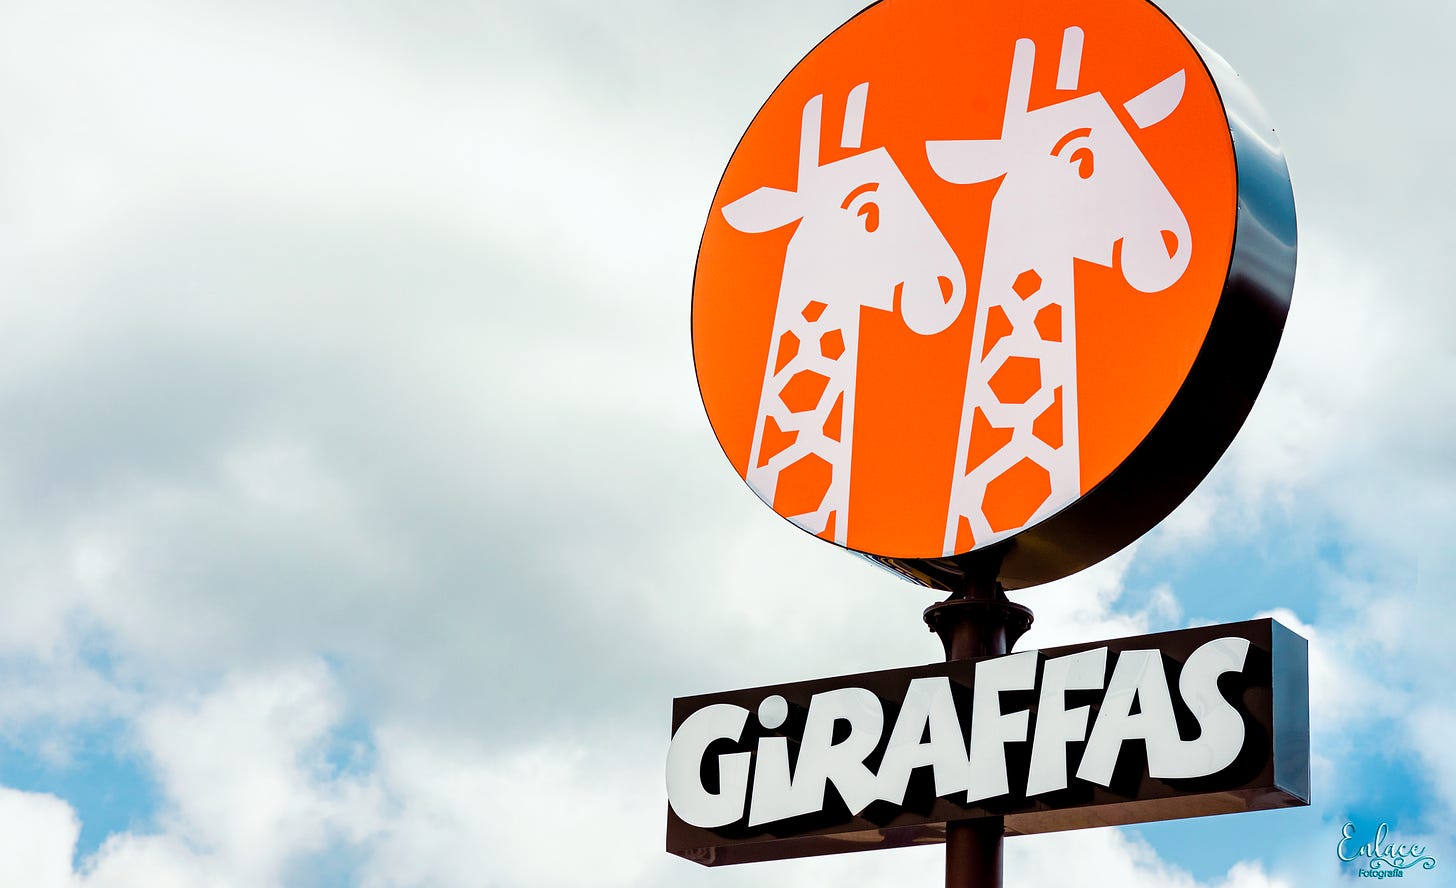 Giraffas passa a usar feedbacks de clientes em ações para elevar a  experiência de consumo - Mercado&Consumo